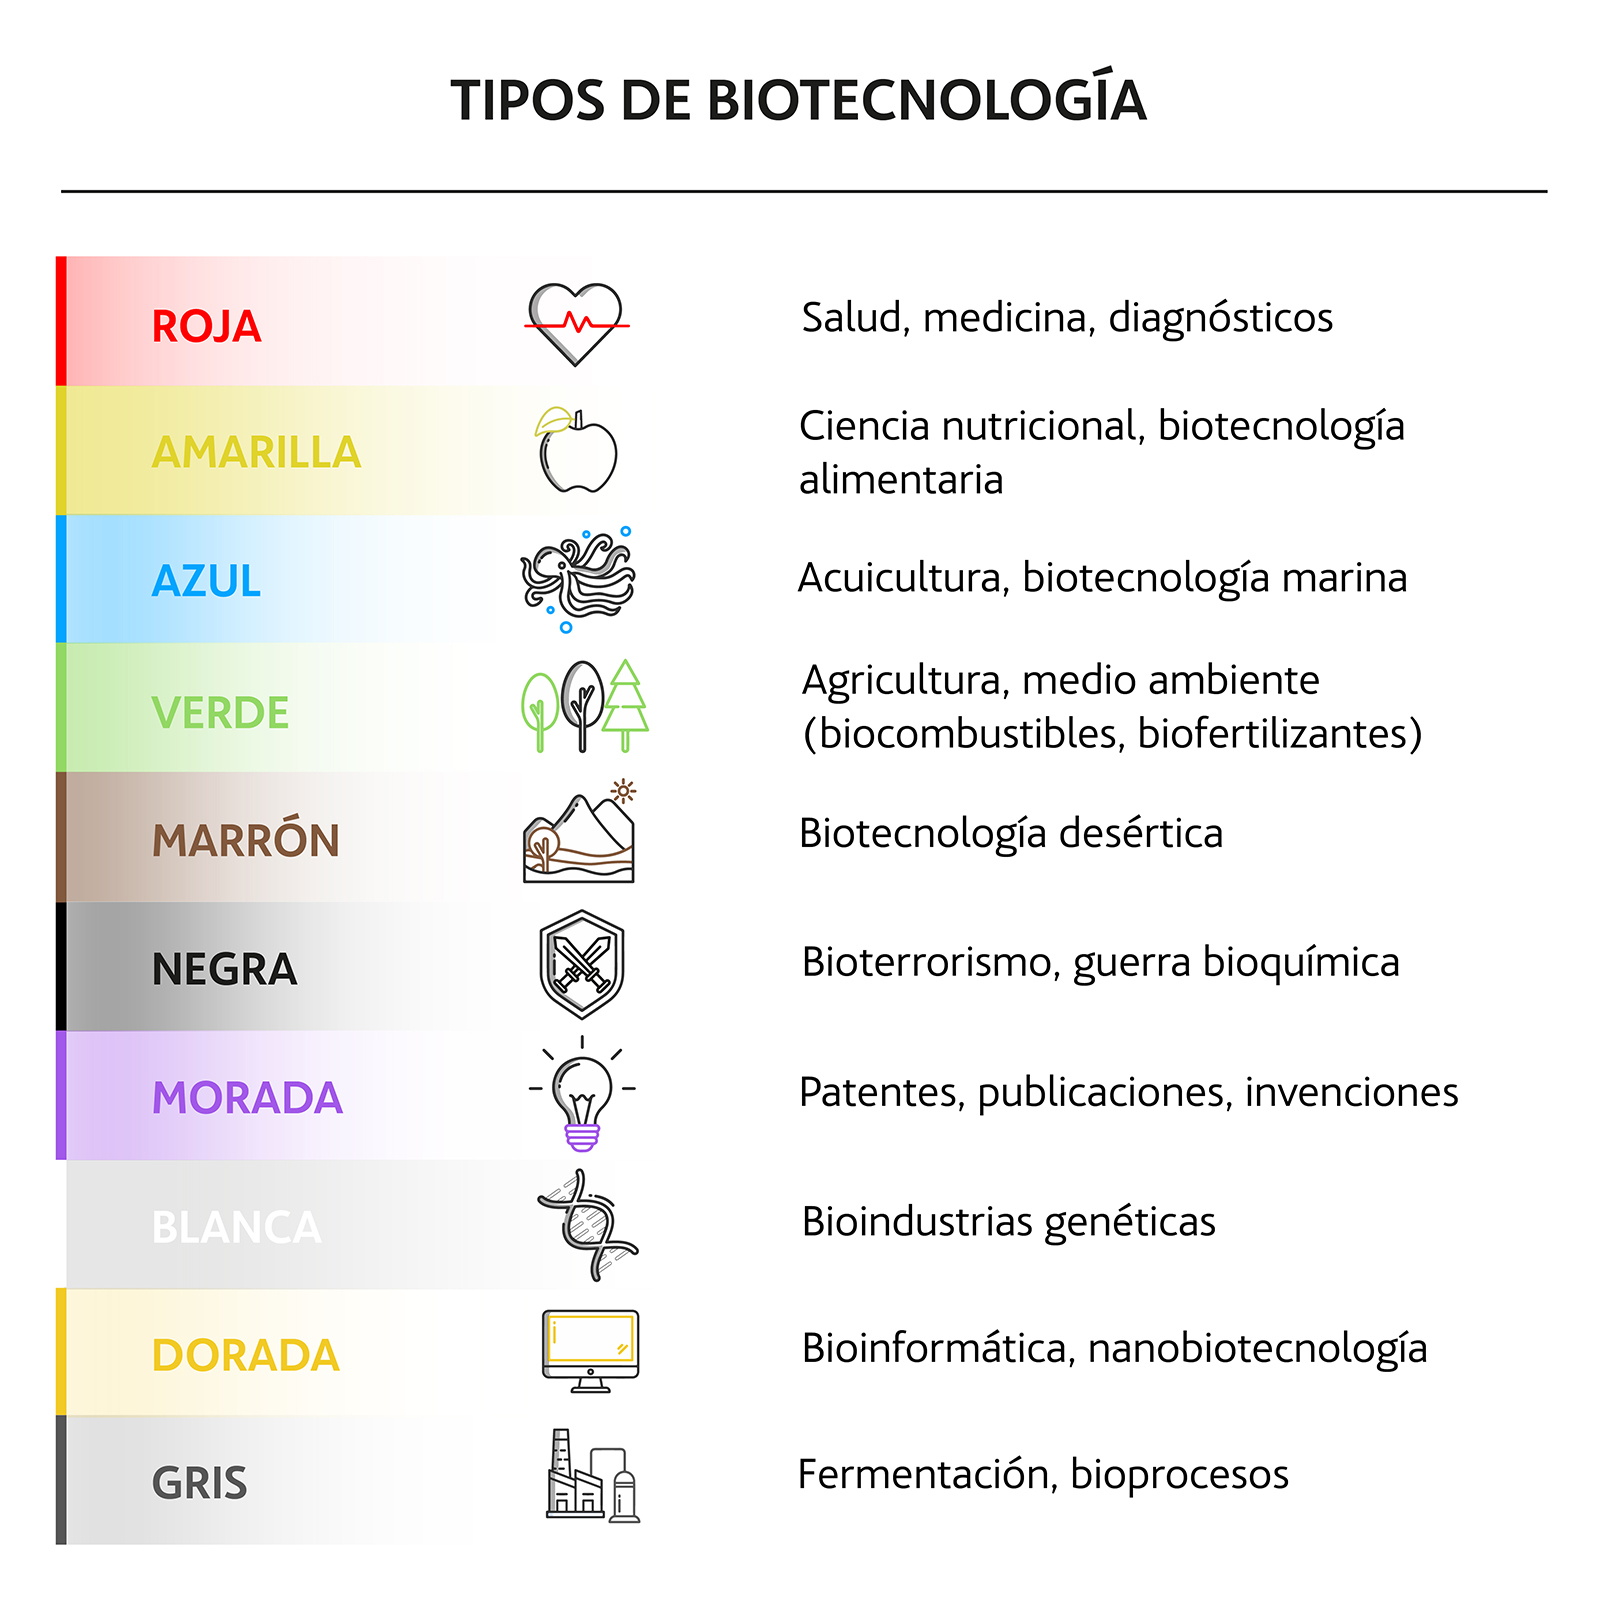 Tipos de biotecnología